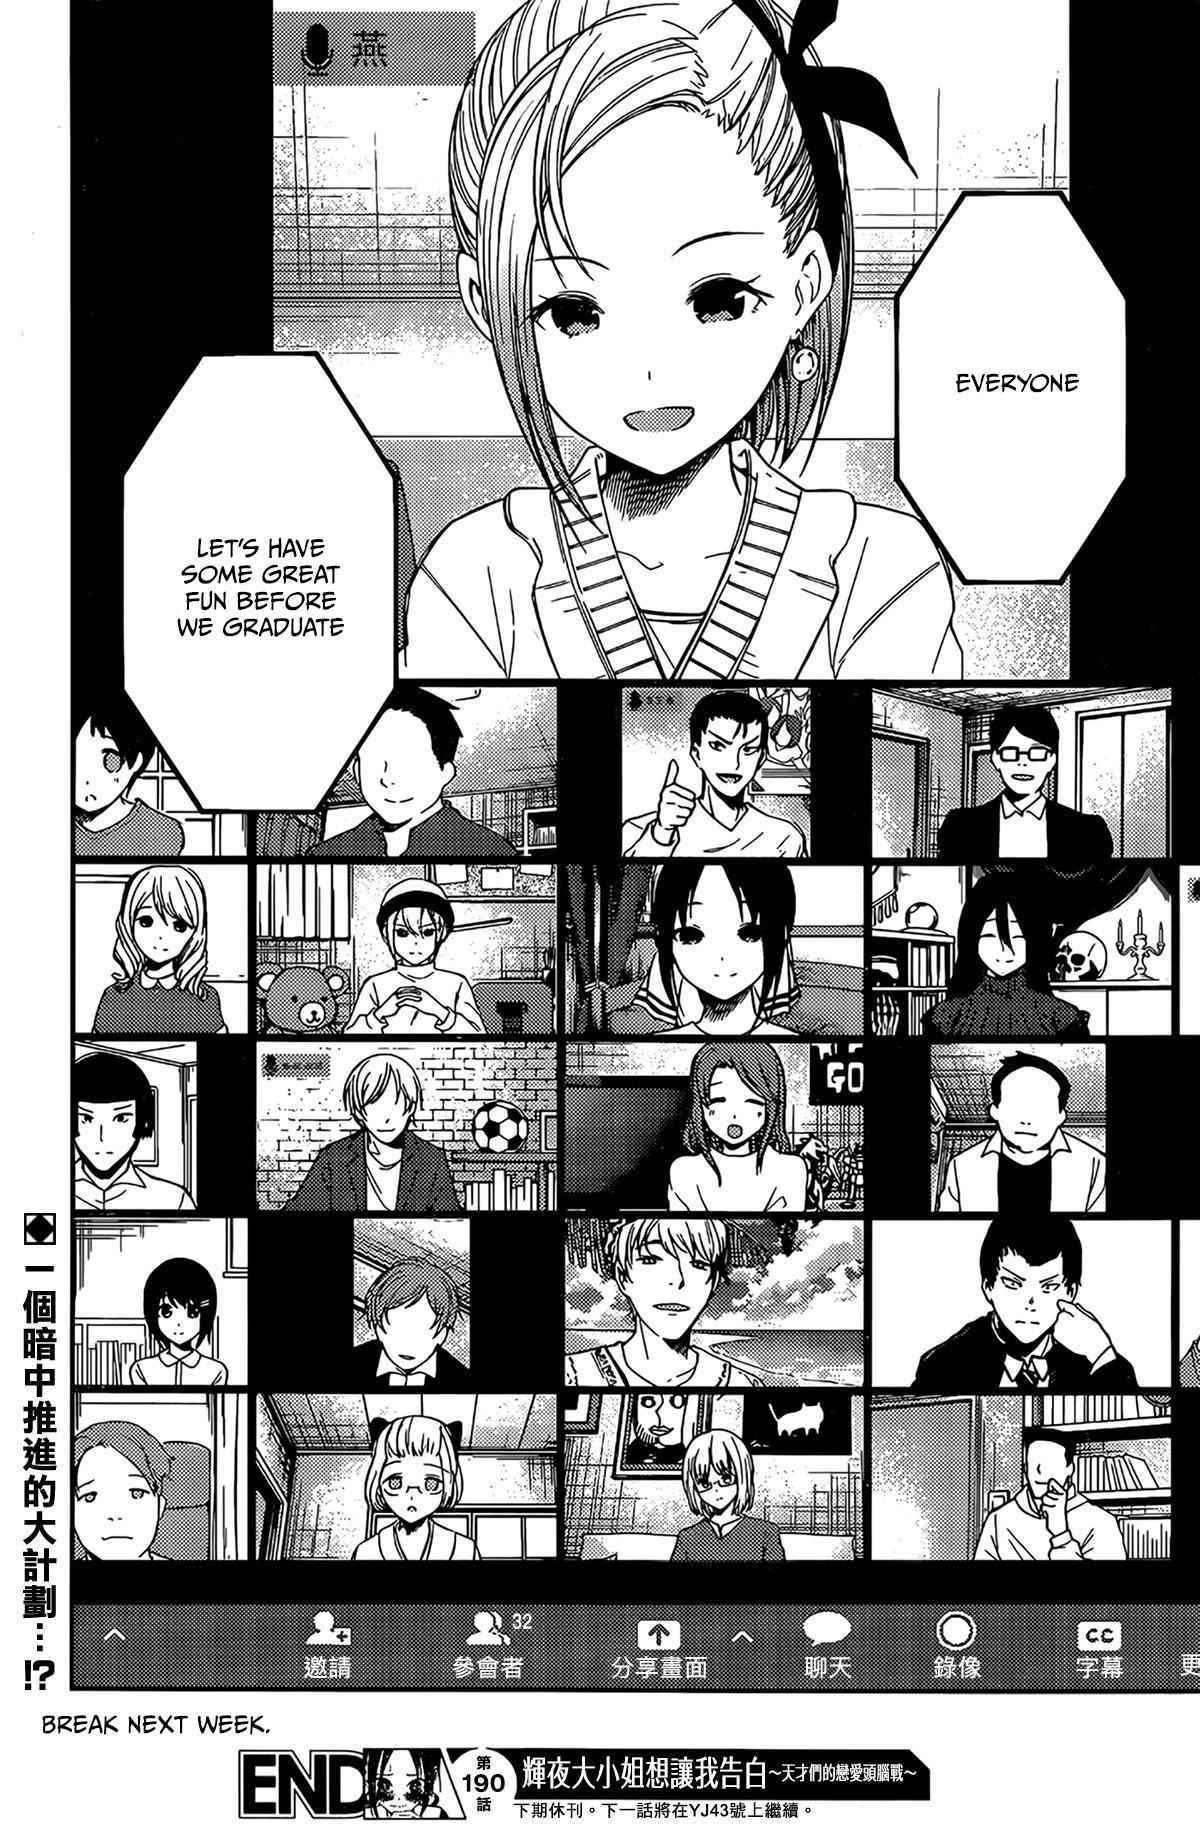 Kaguya-sama-wa-Kokurasetai-Ultra-Romantic-anime-pv-manga-chapter-110-adaptation-screenshot-destaque-tile  - IntoxiAnime